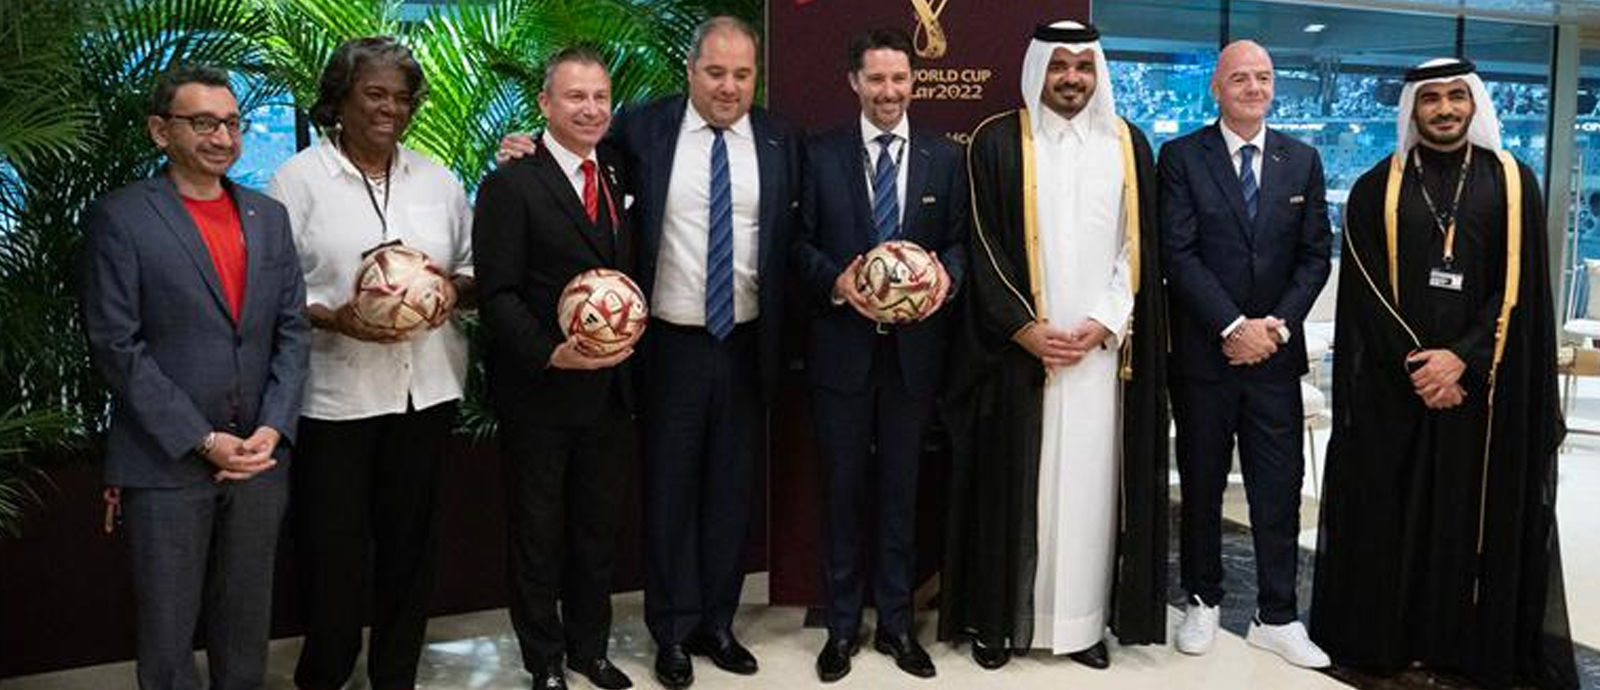 الشيخ جوعان يسلم كرة استضافة بطولة كأس العالم 2026 لكل من كندا والمكسيك والولايات المتحدة